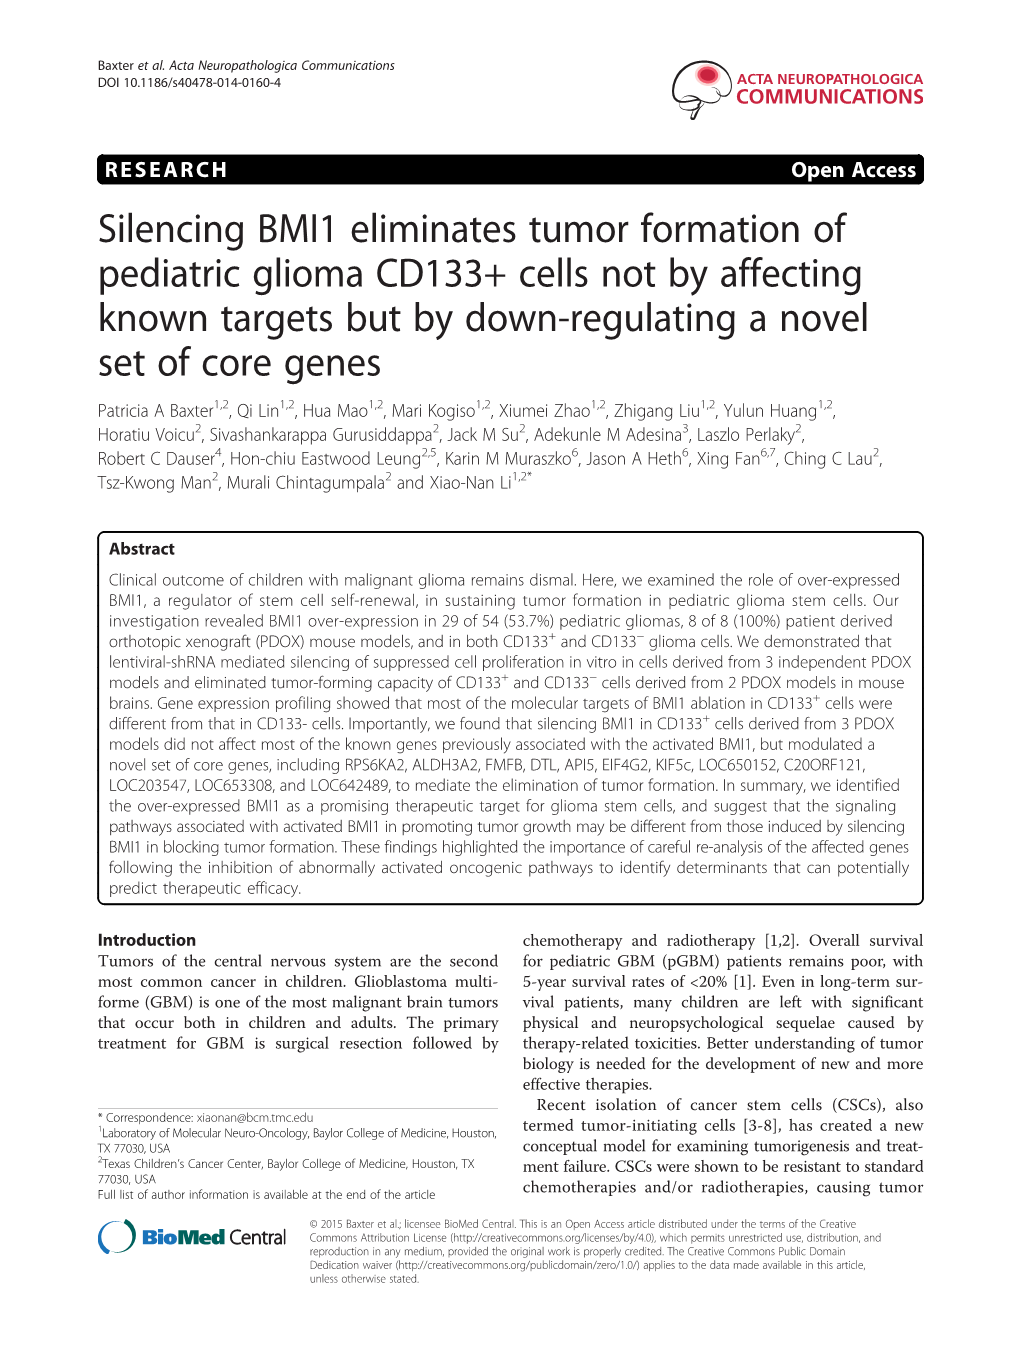 Silencing BMI1 Eliminates Tumor Formation of Pediatric Glioma